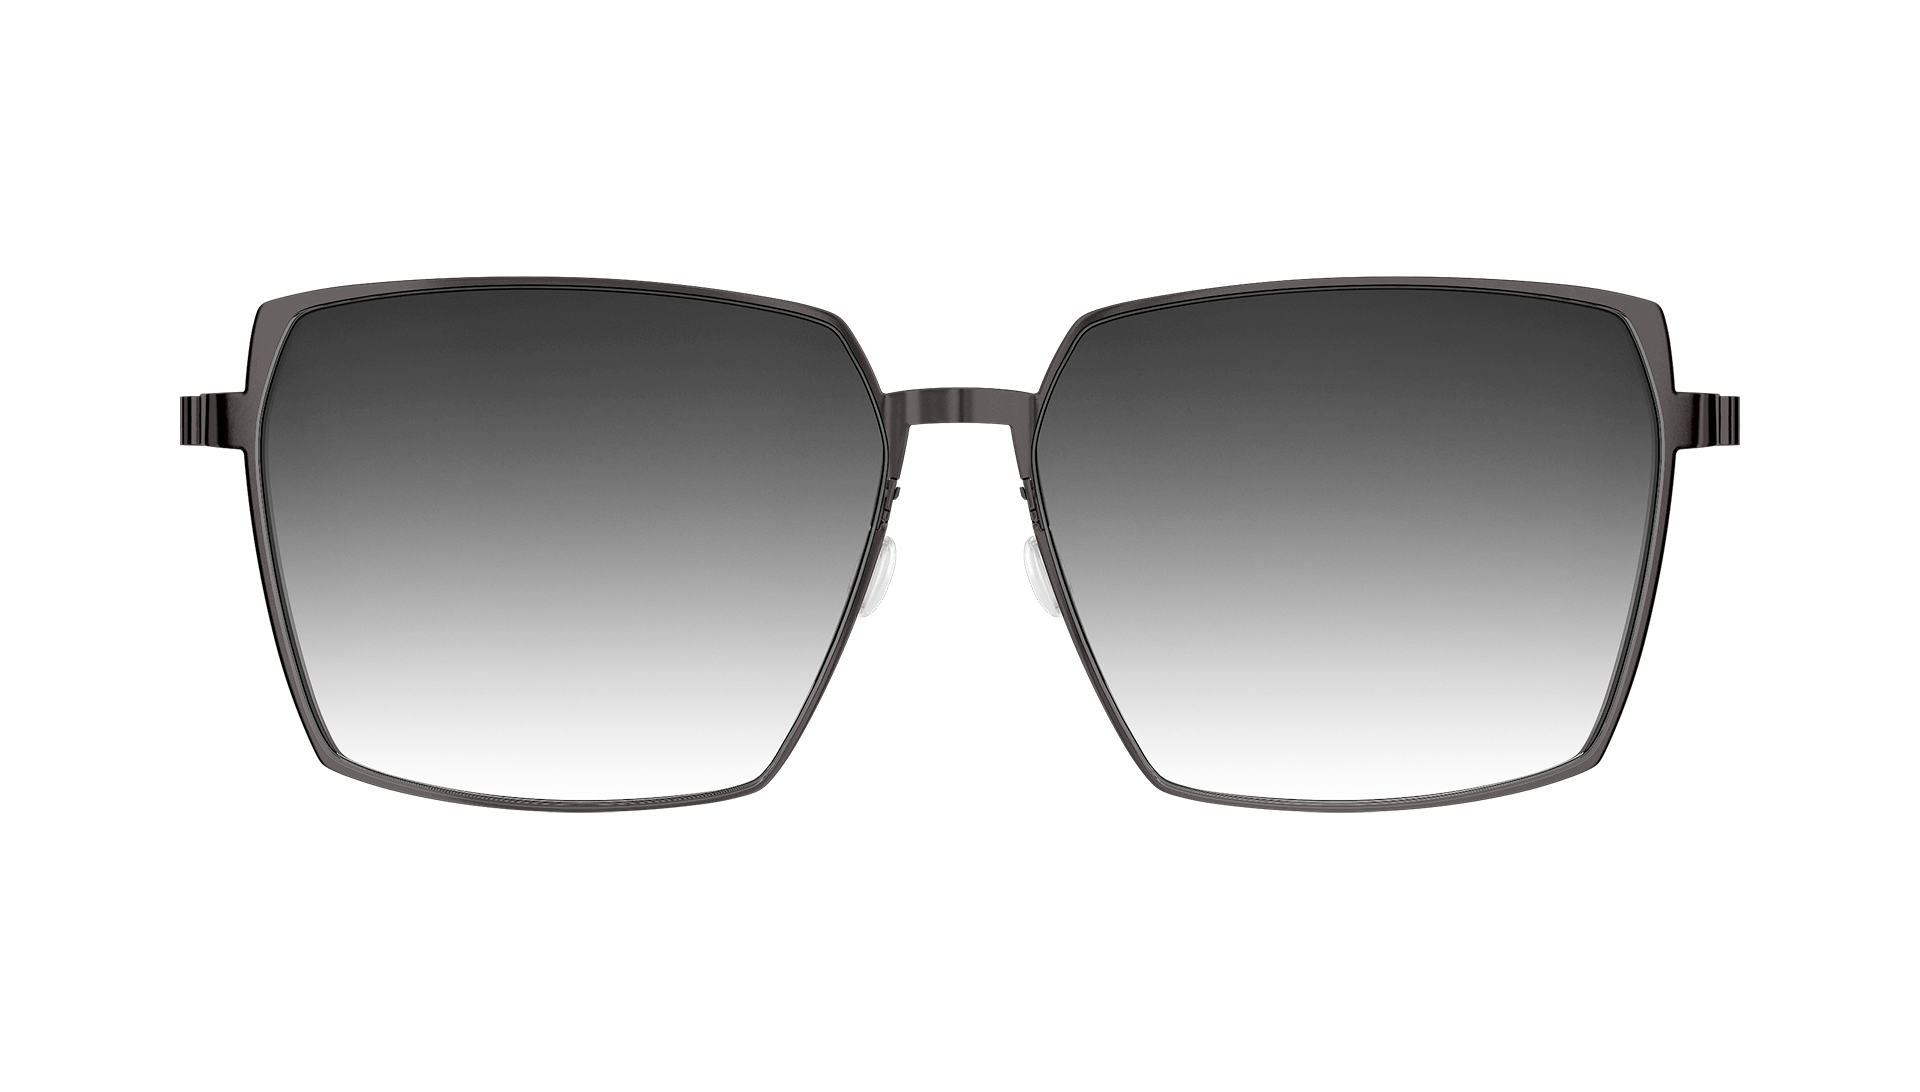 LINDBERG sun titanium Model 8907 square sunglasses with dark grey gradient tinted lenses